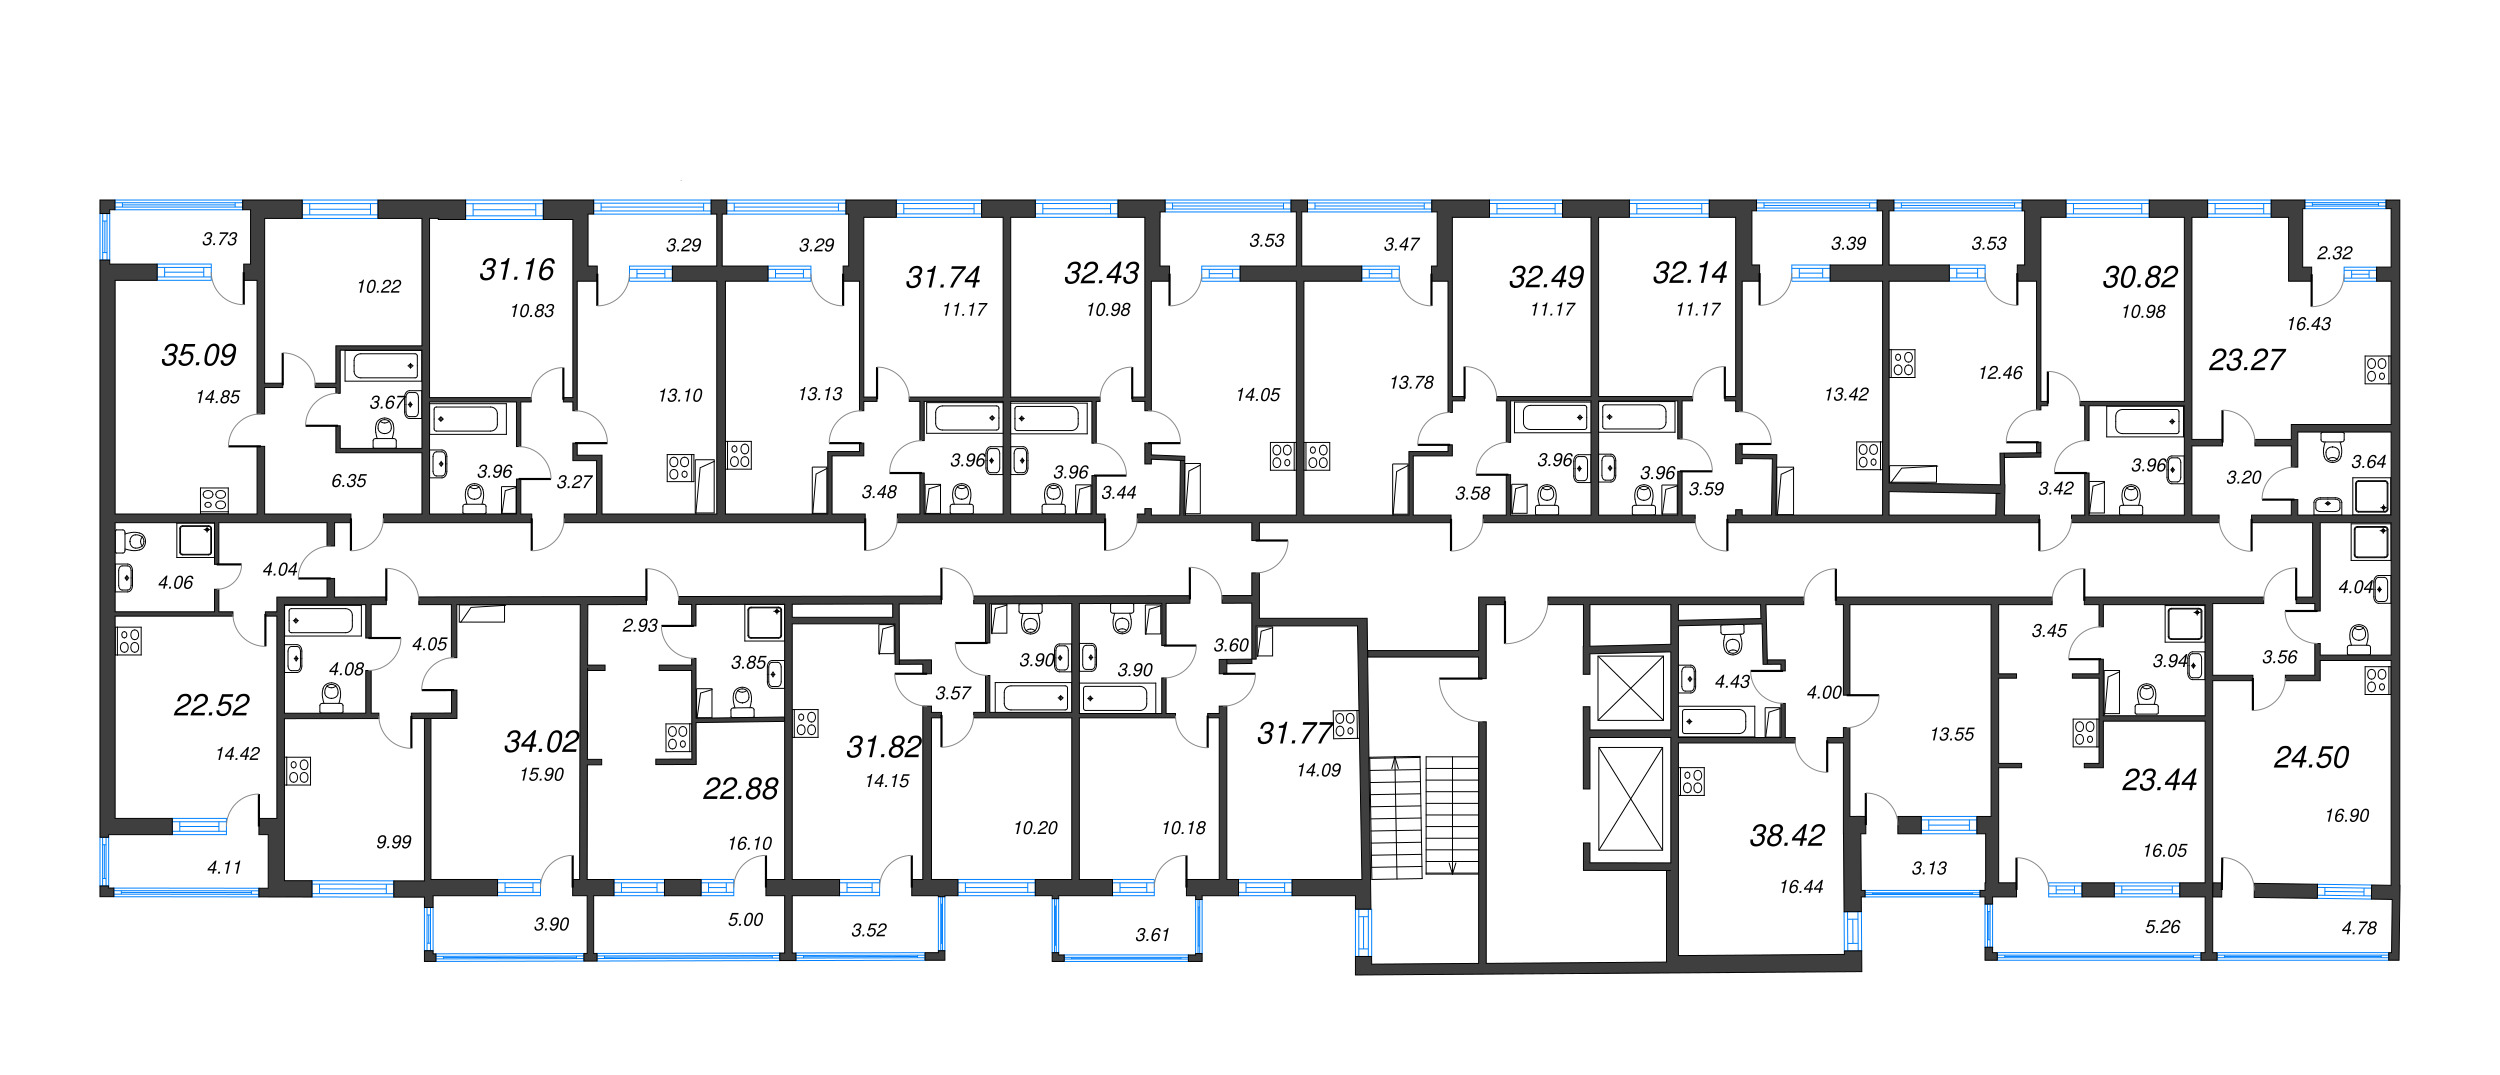 2-комнатная (Евро) квартира, 38.42 м² в ЖК "Полис ЛАВрики" - планировка этажа